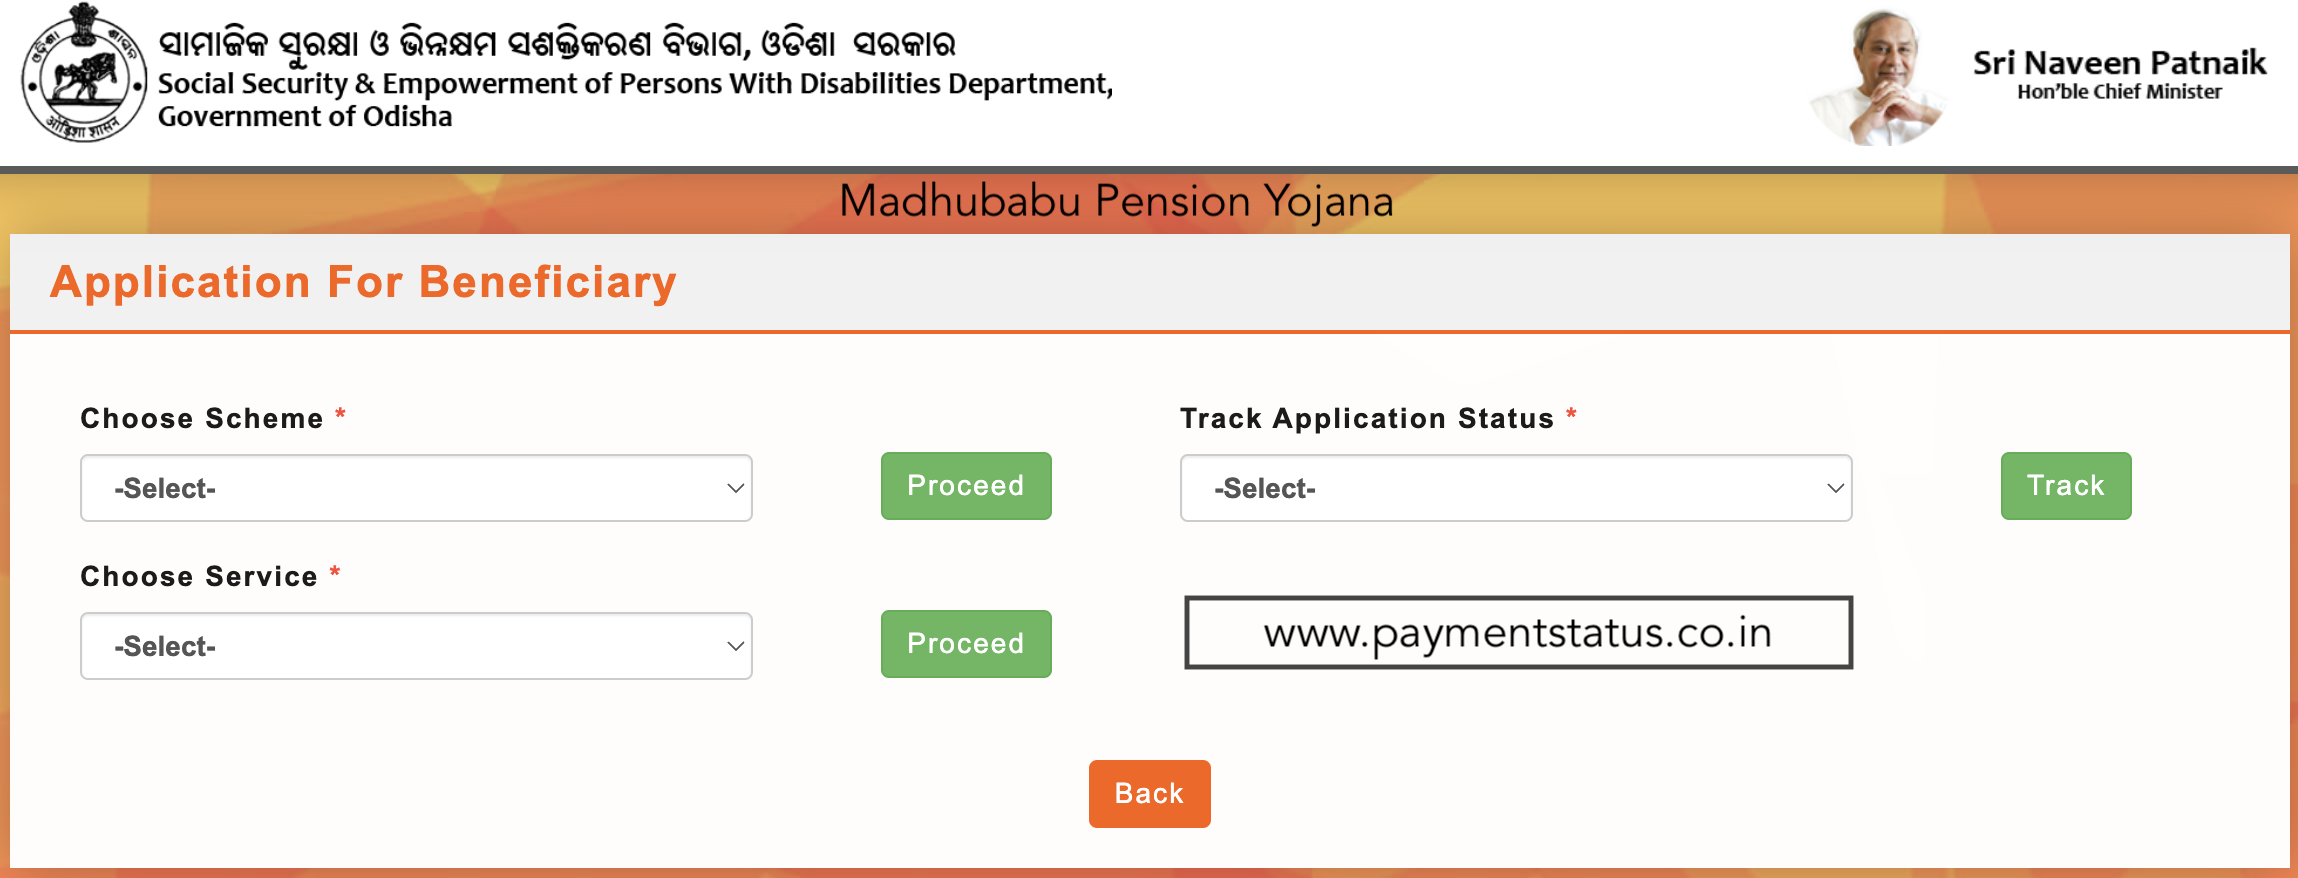 Madhubabu Pension Yojana